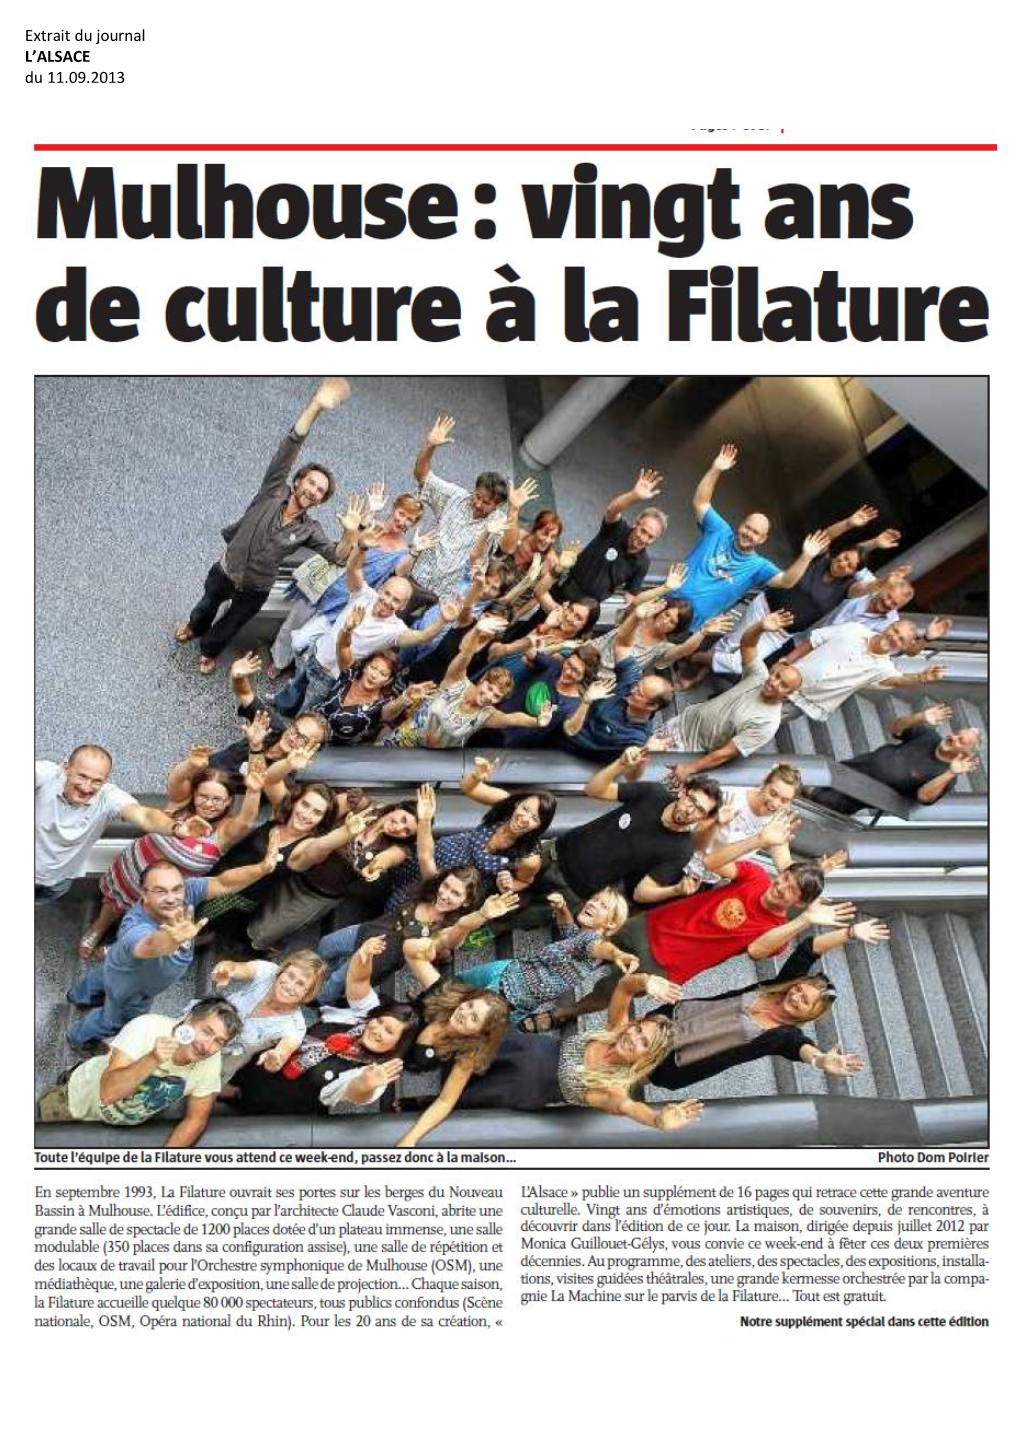 Extrait Du Journal L’ALSACE Du 11.09.2013